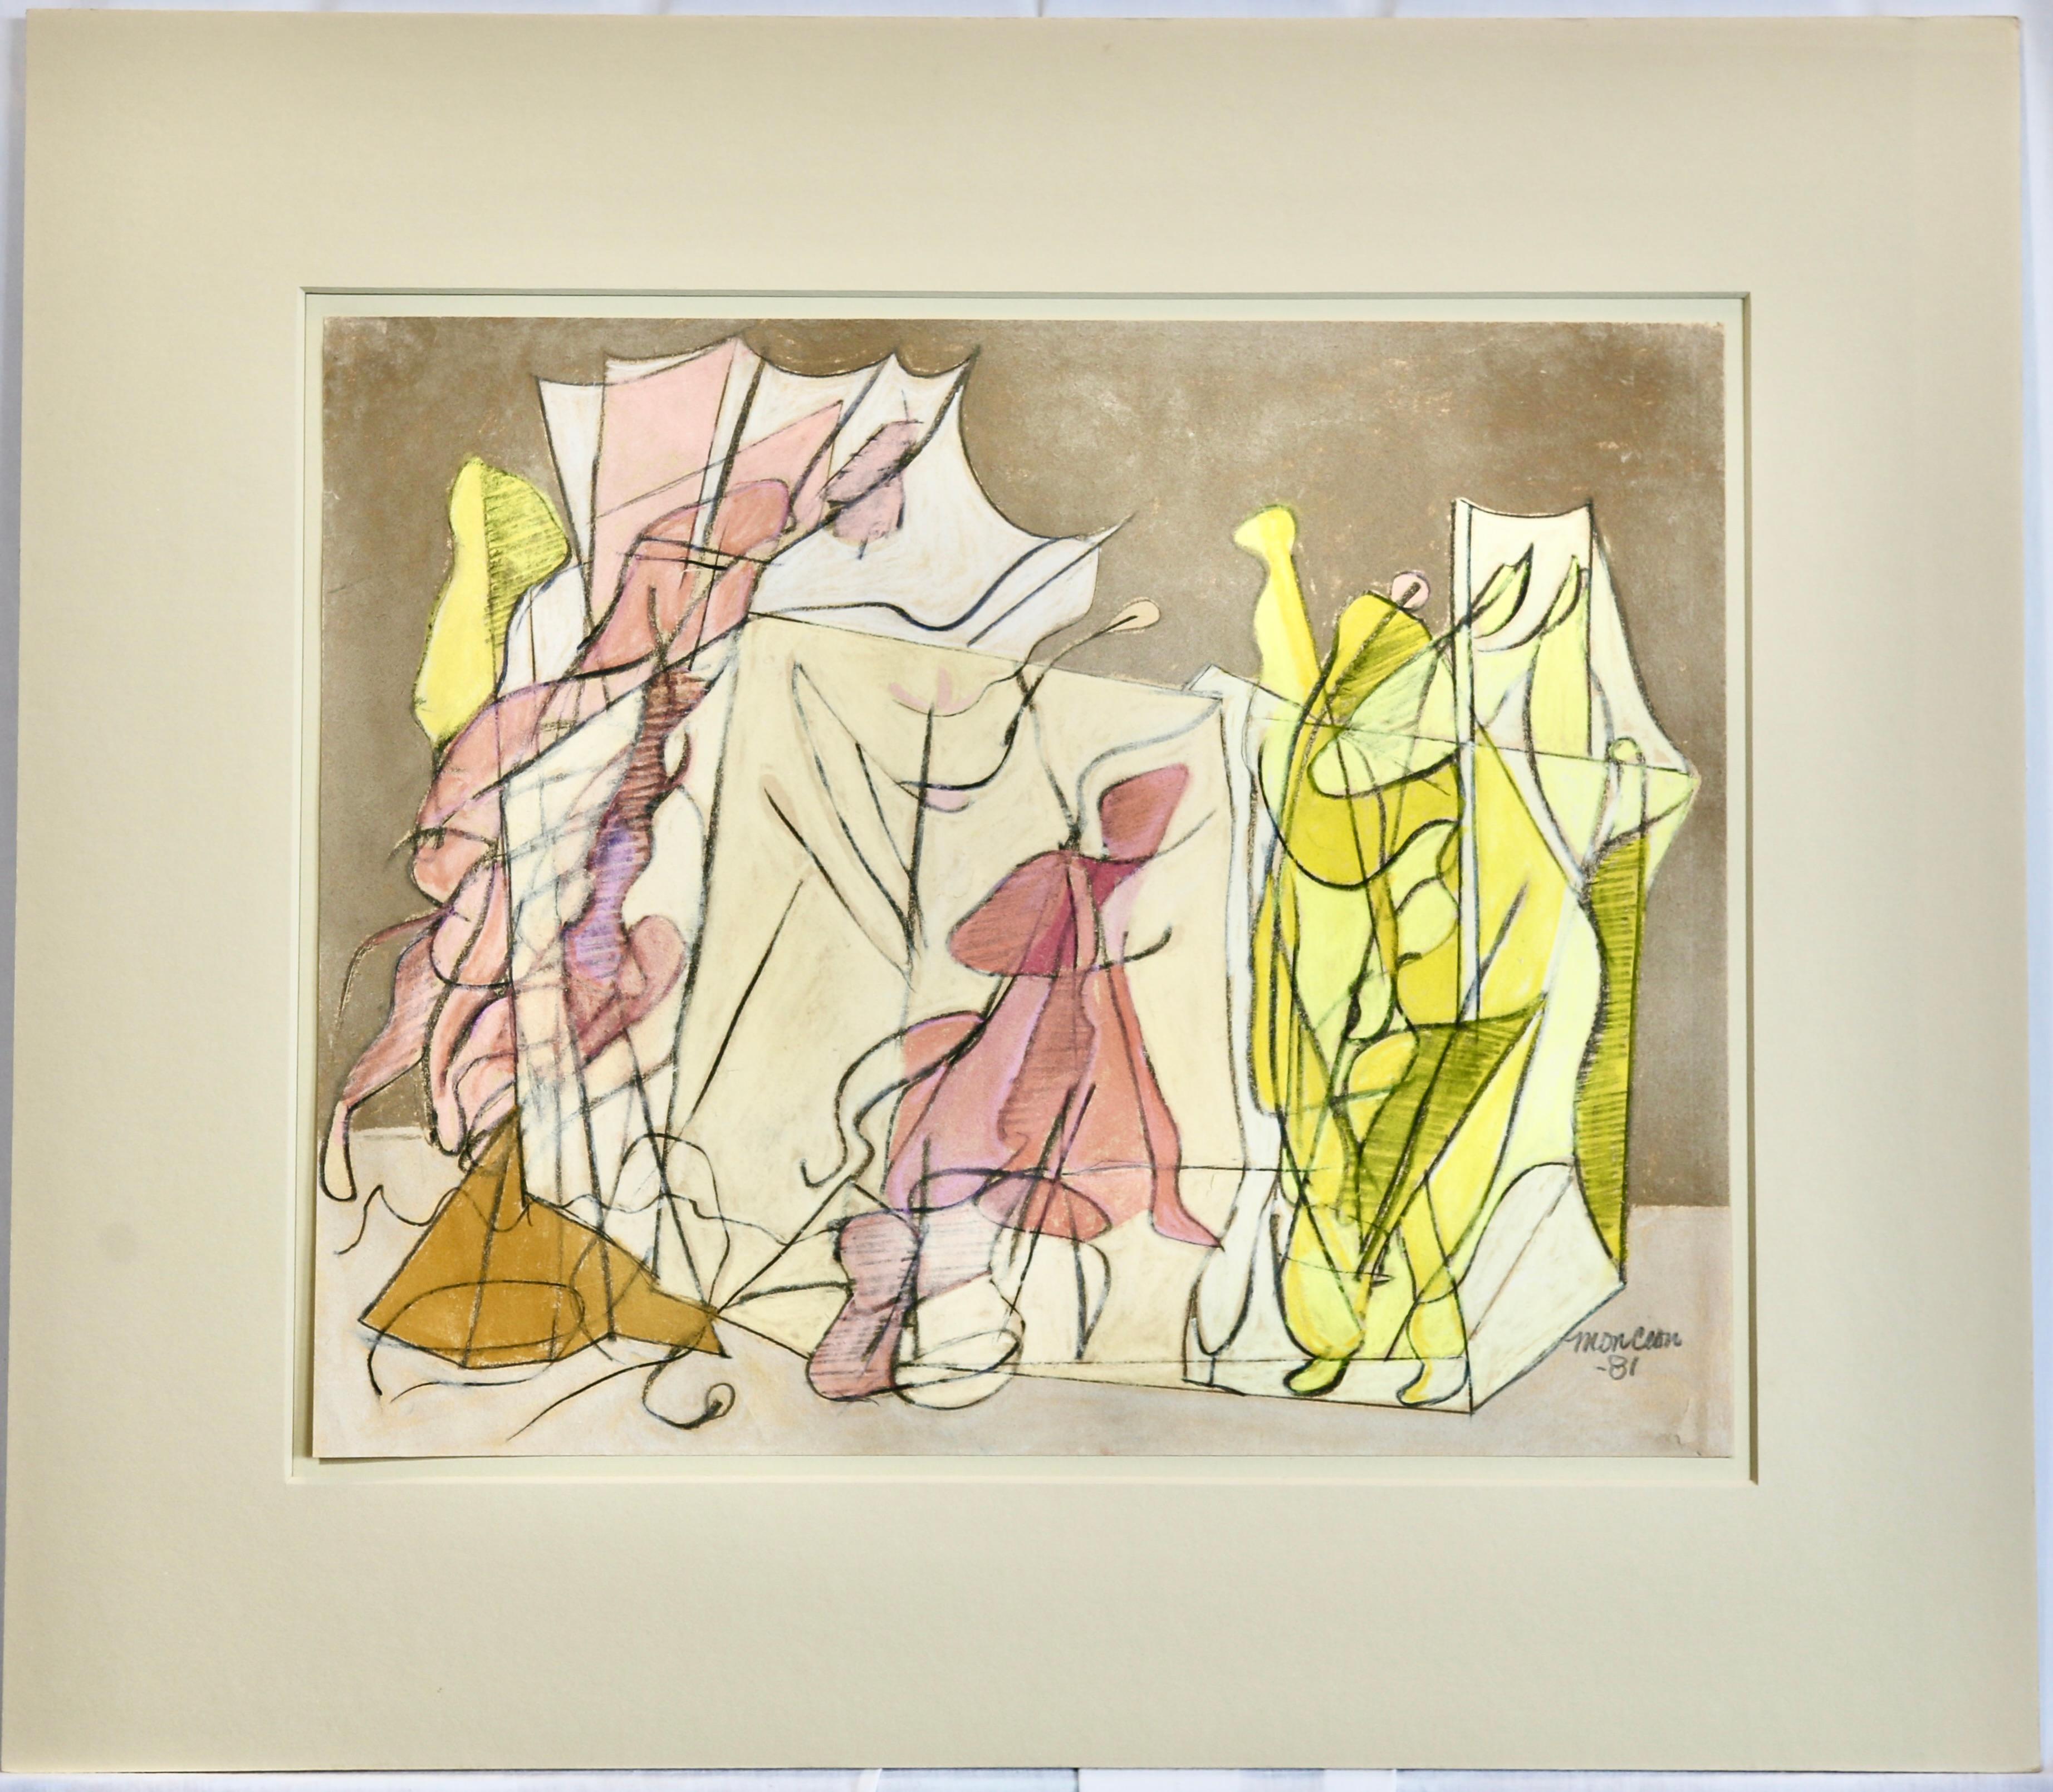 Francisco Moncion's Pastel on Paper 